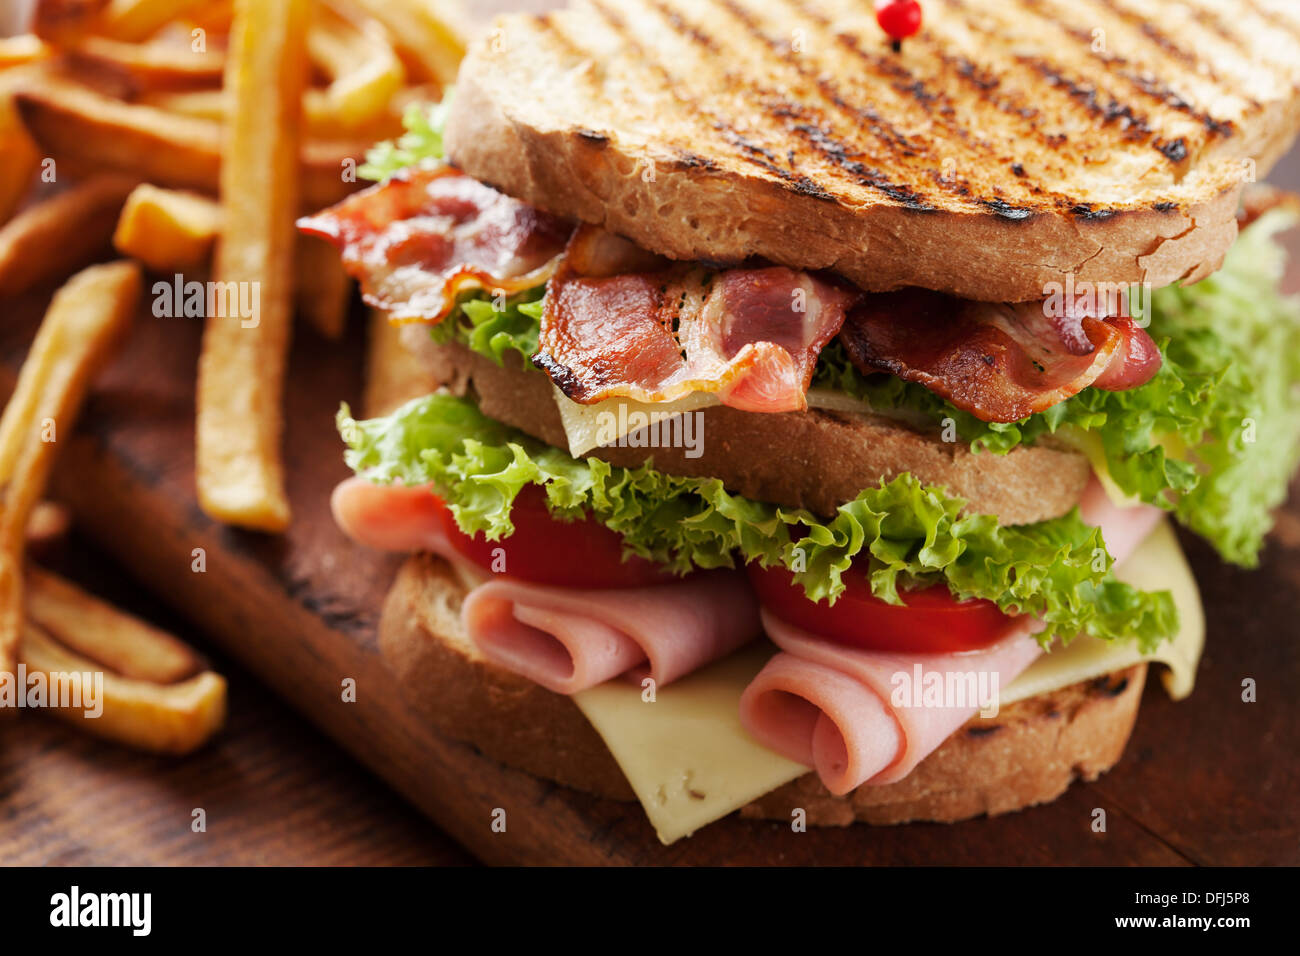 club sandwich Stock Photo